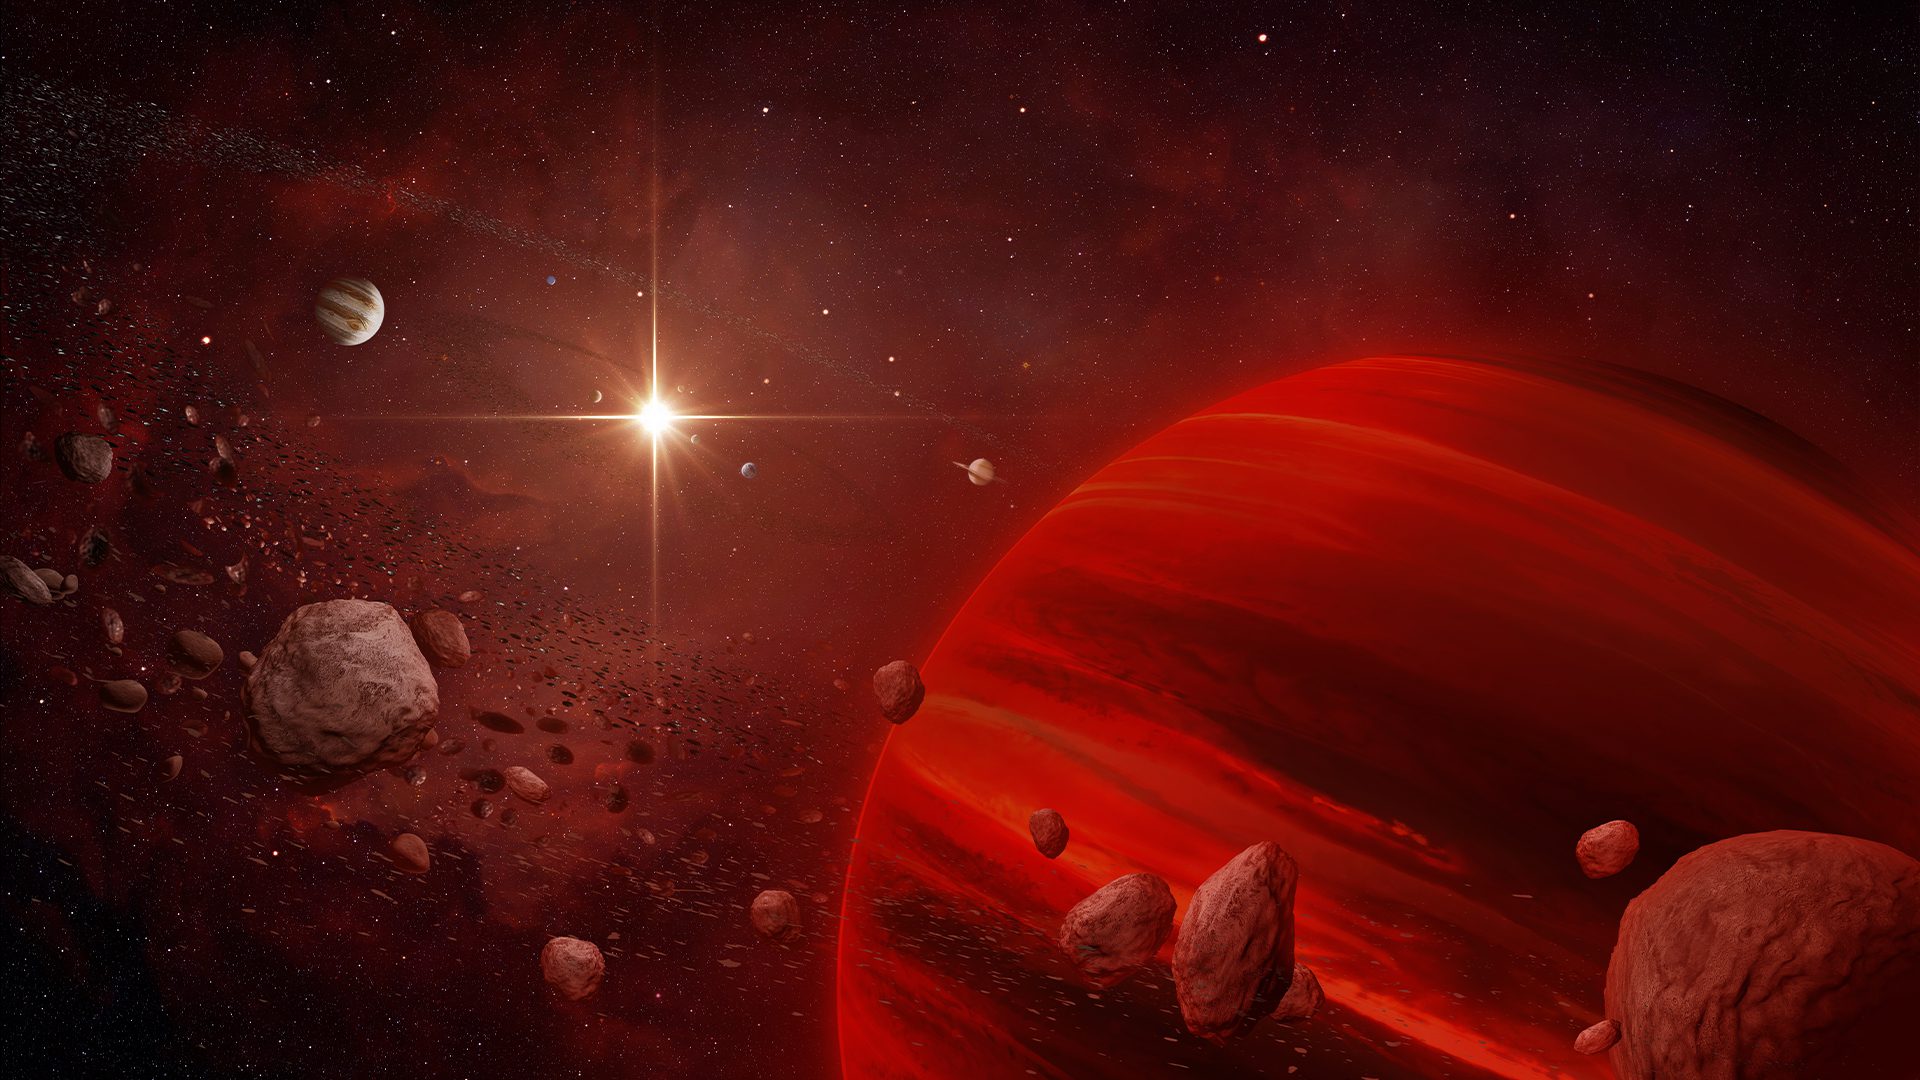 ¿Podría una estrella convertirse algún día en un planeta? -Revista Interesante